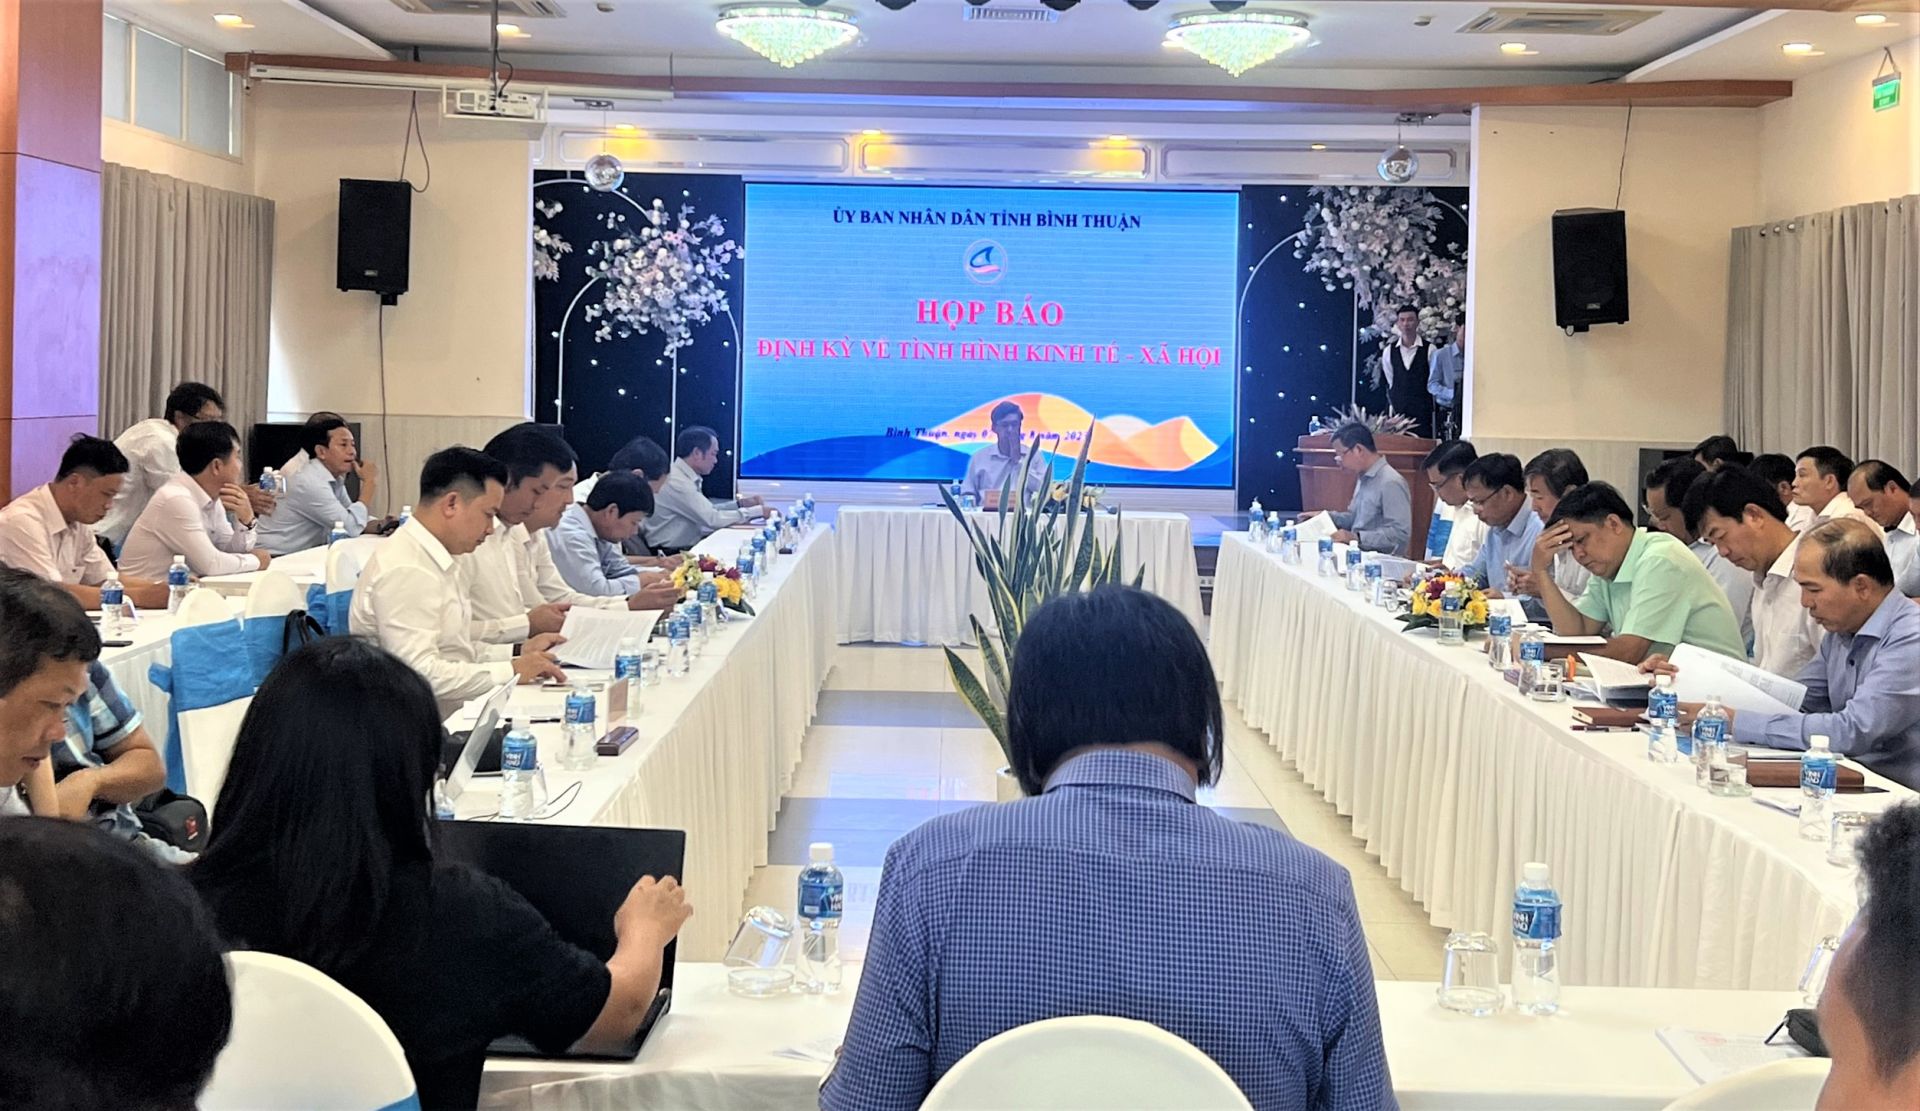 Toàn cảnh buổi Họp báo định kỳ thông tin về tình hình kinh tế - xã hội 6 tháng đầu năm 2023 của tỉnh Bình Thuận